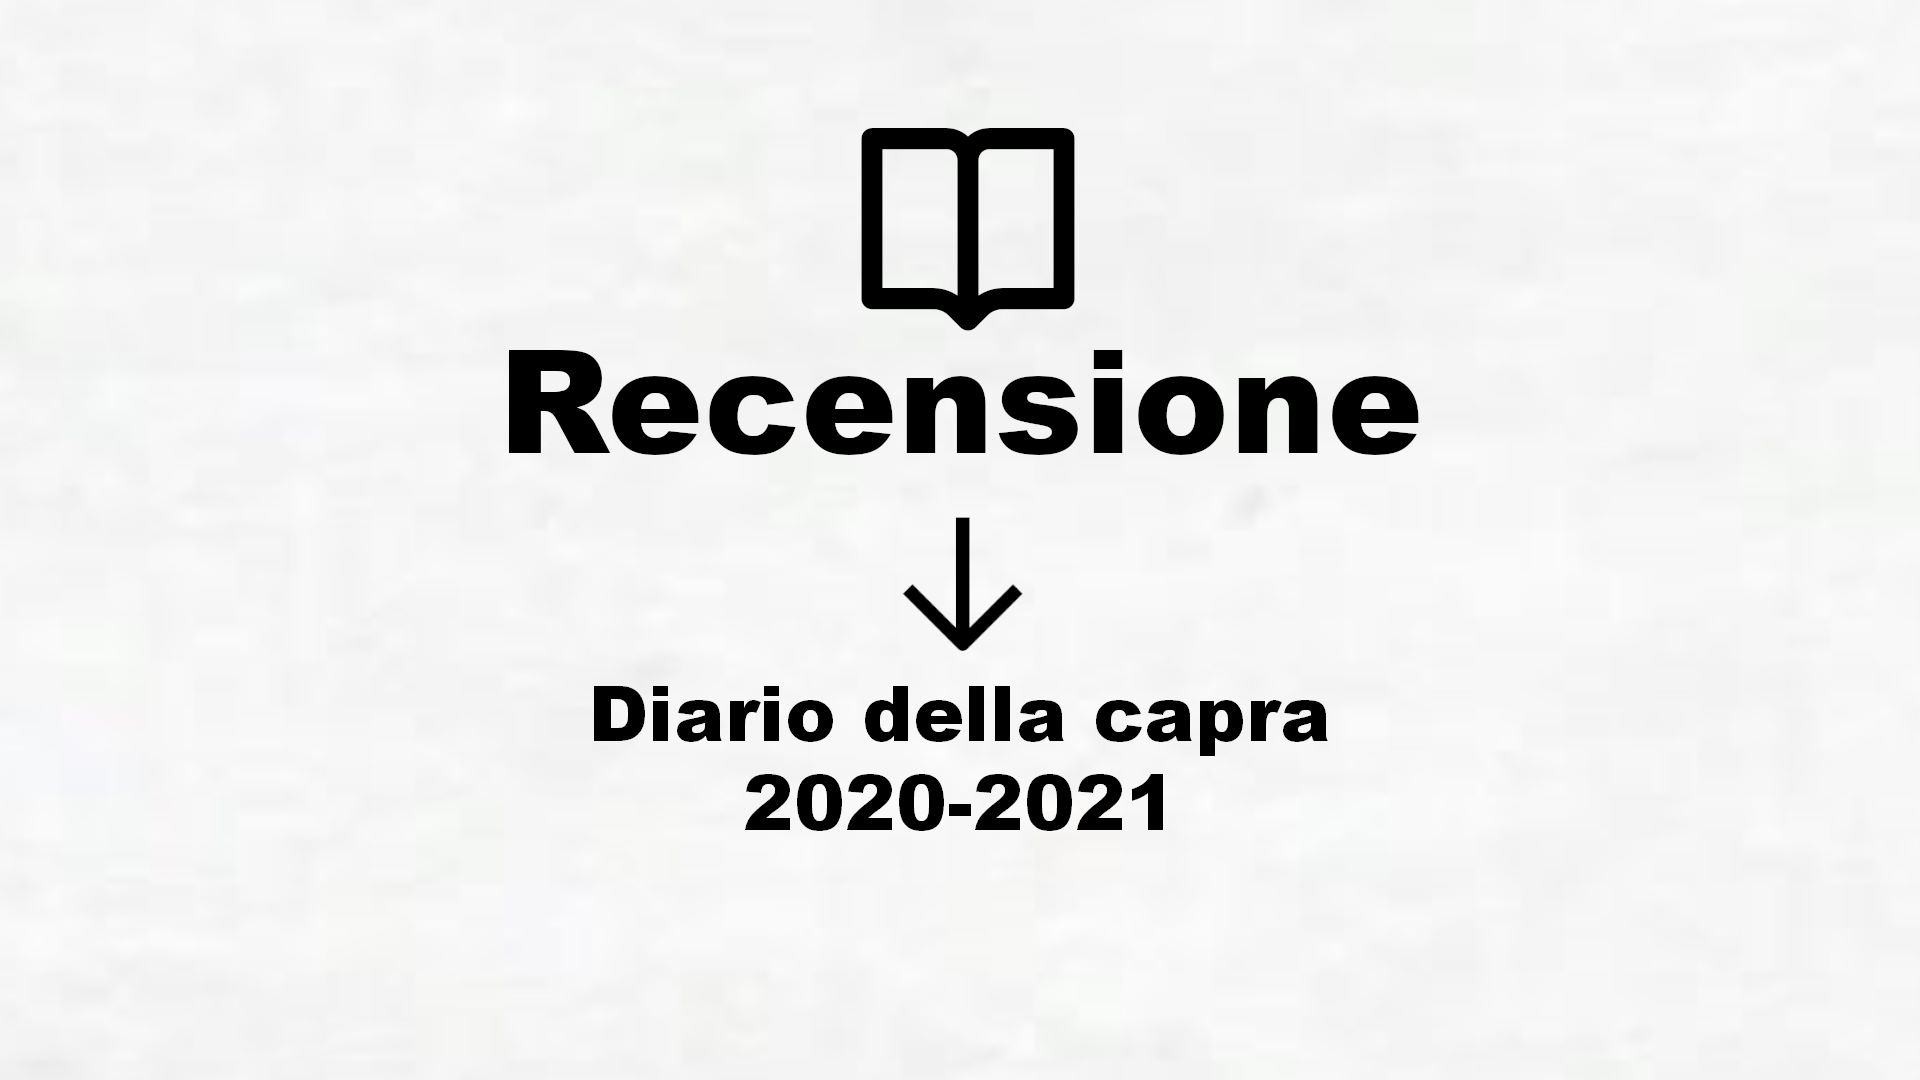 Diario della capra 2020-2021 – Recensione Libro